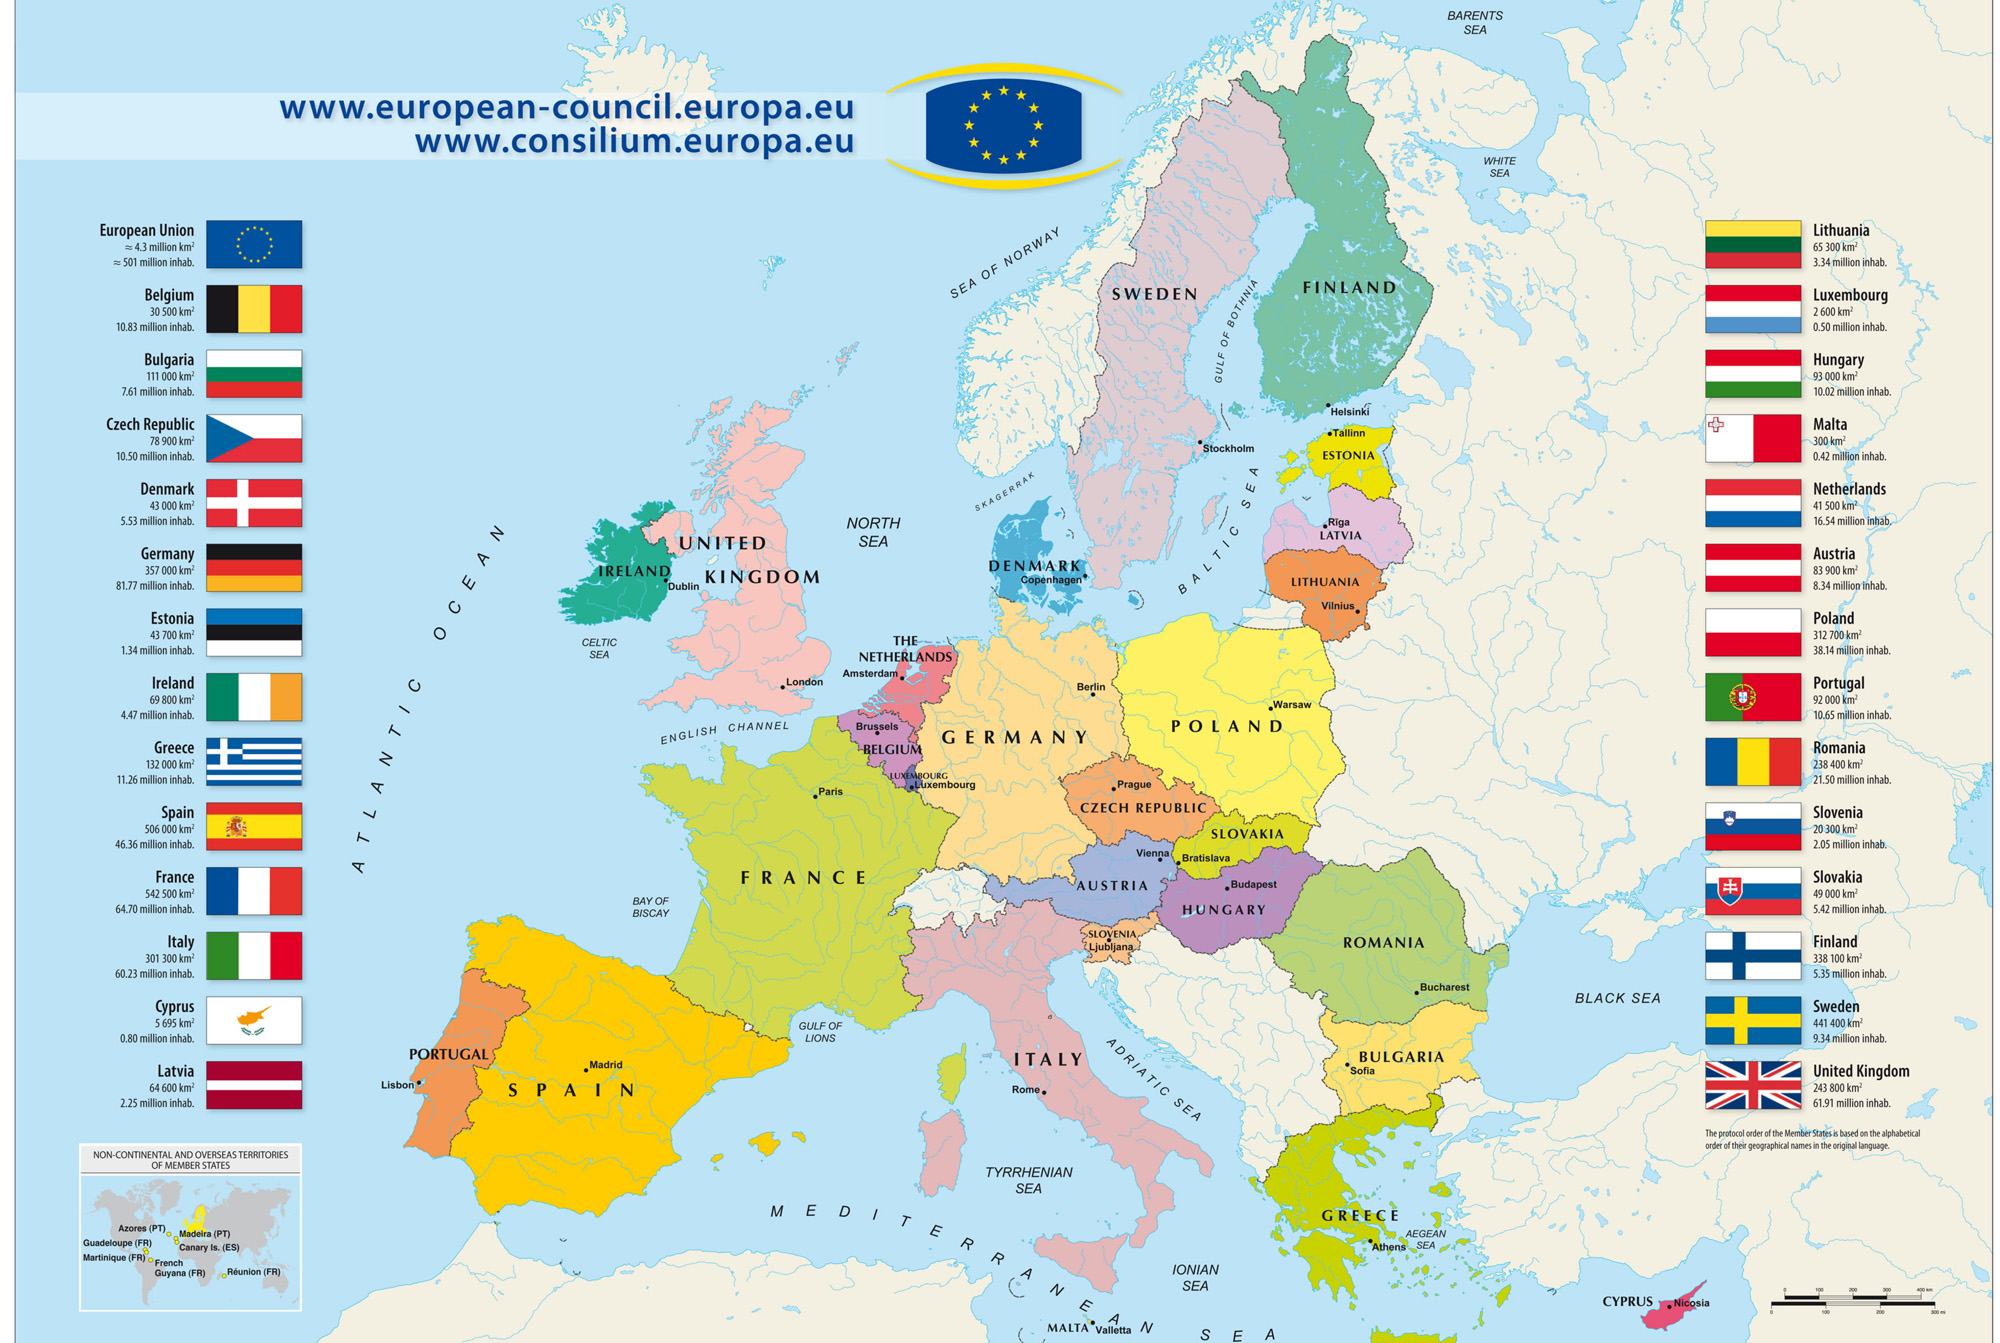 Bản đồ Châu Âu năm 2024 sẽ mang đến cho bạn những trải nghiệm tuyệt vời về văn hóa, lịch sử và thiên nhiên của châu lục này. Từ Paris ở phía tây đến Moscow ở phía đông, bạn có thể khám phá những thành phố đầy năng lượng và những cảnh quan thiên nhiên tuyệt đẹp. Hãy tìm hiểu thêm về châu Âu trong năm 2024!